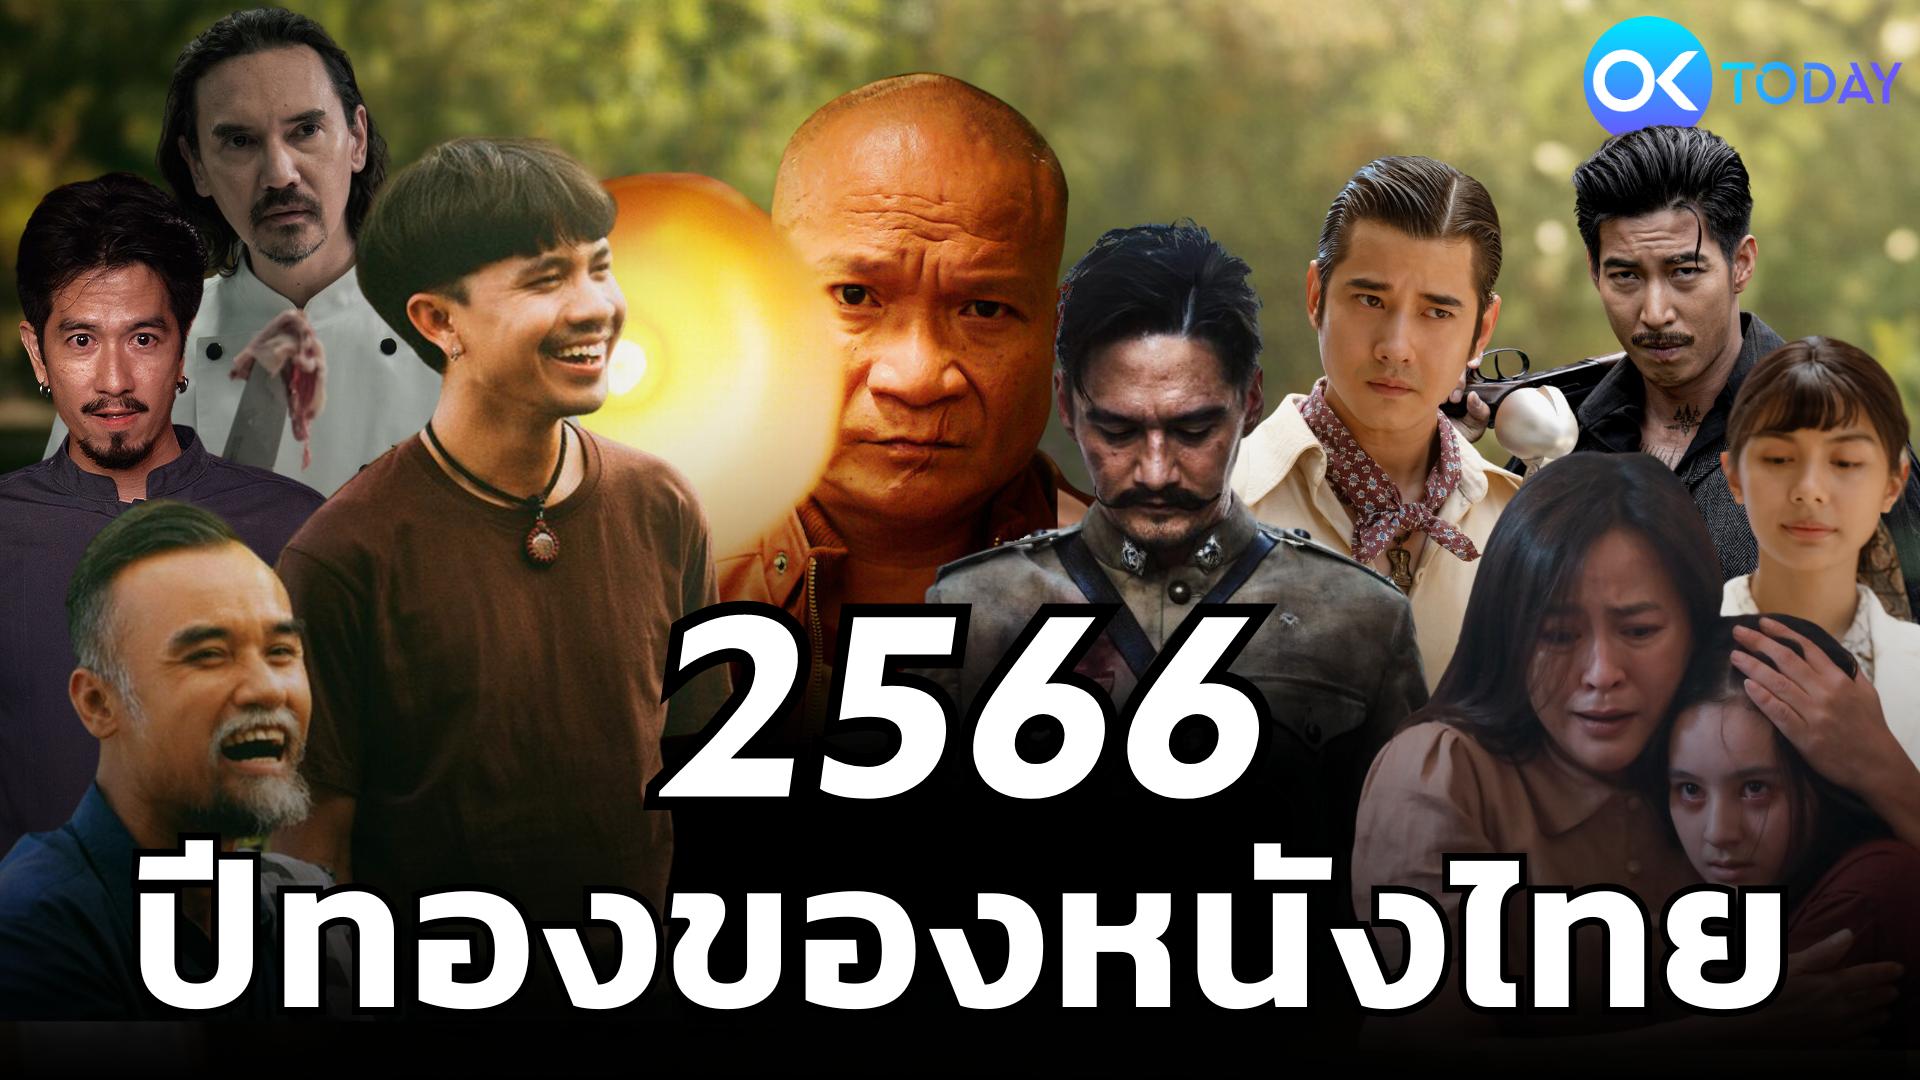 2566 ปีทองของหนังไทย 